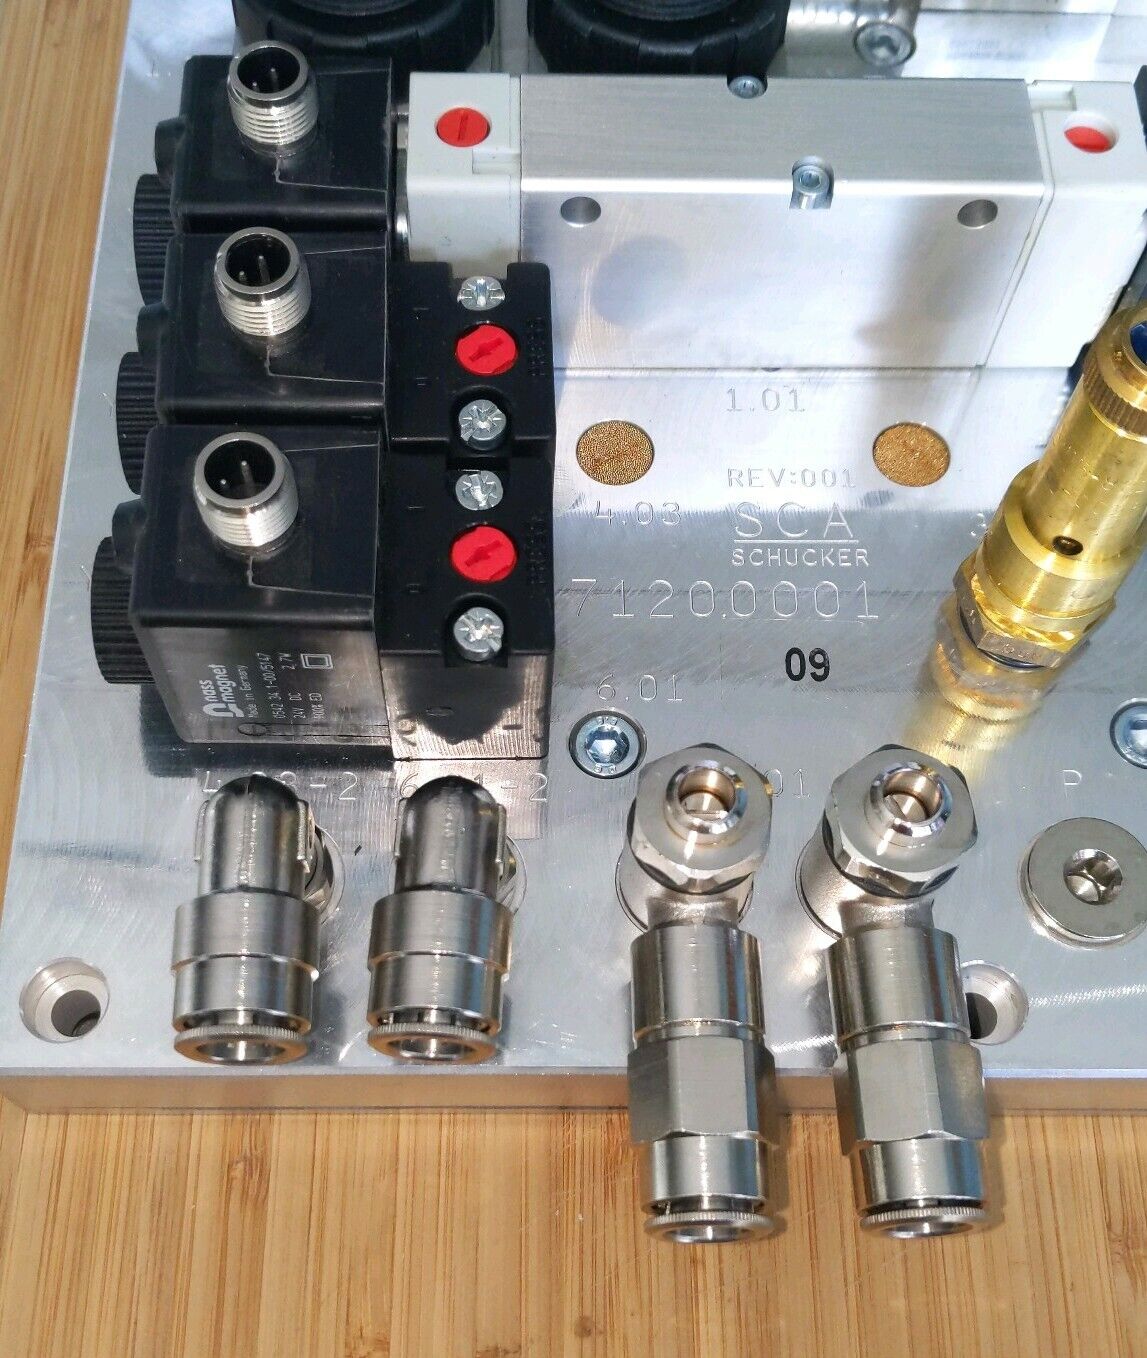 SCA Schucker 7120.000109 Control Block DFP-V12-U (OV100)